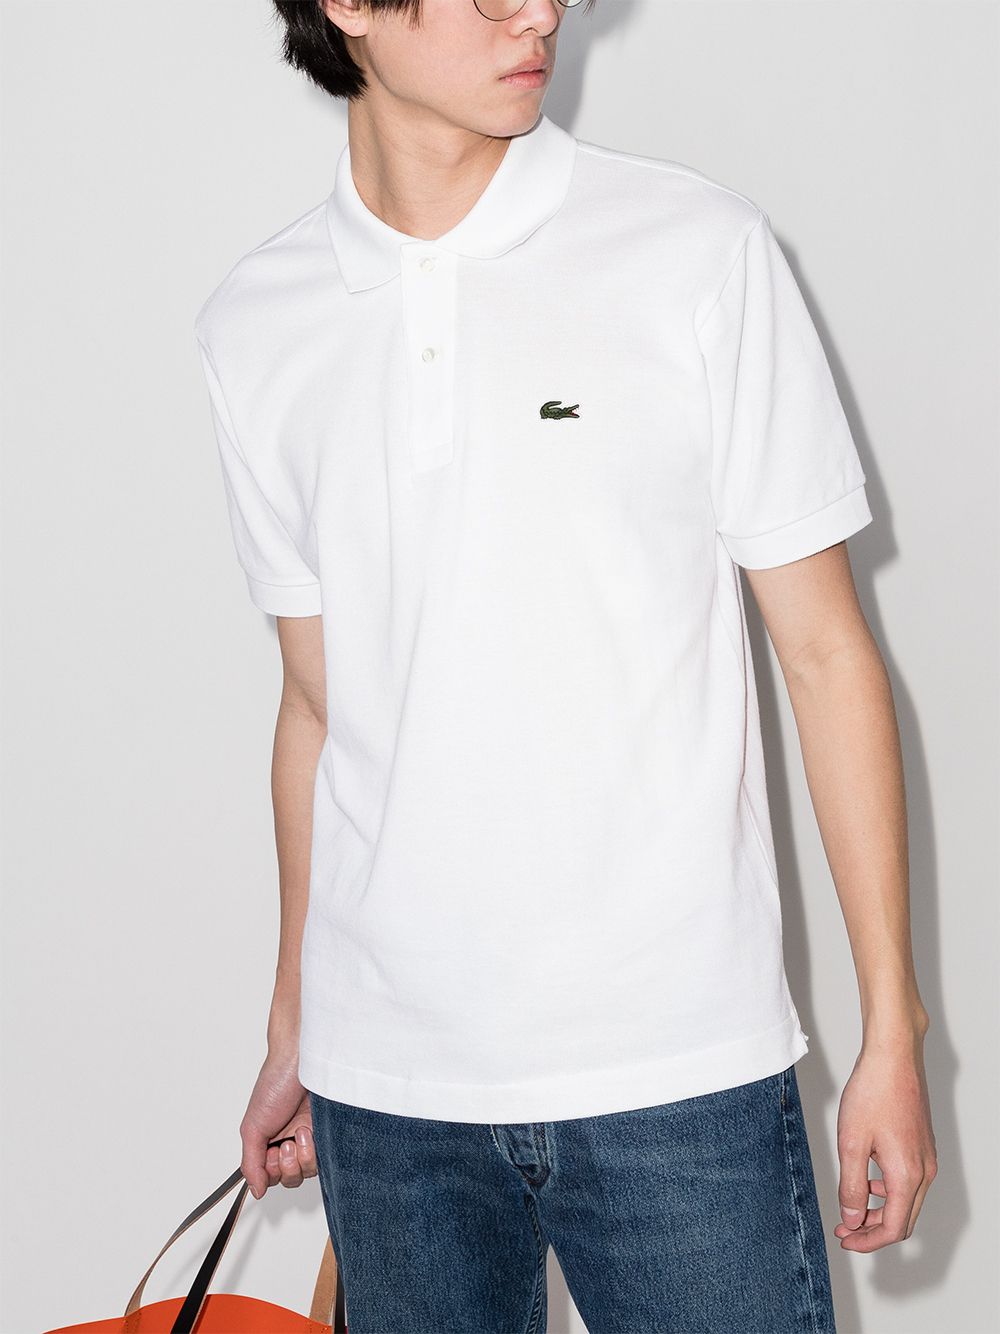 White embroidered-logo cotton polo shirt